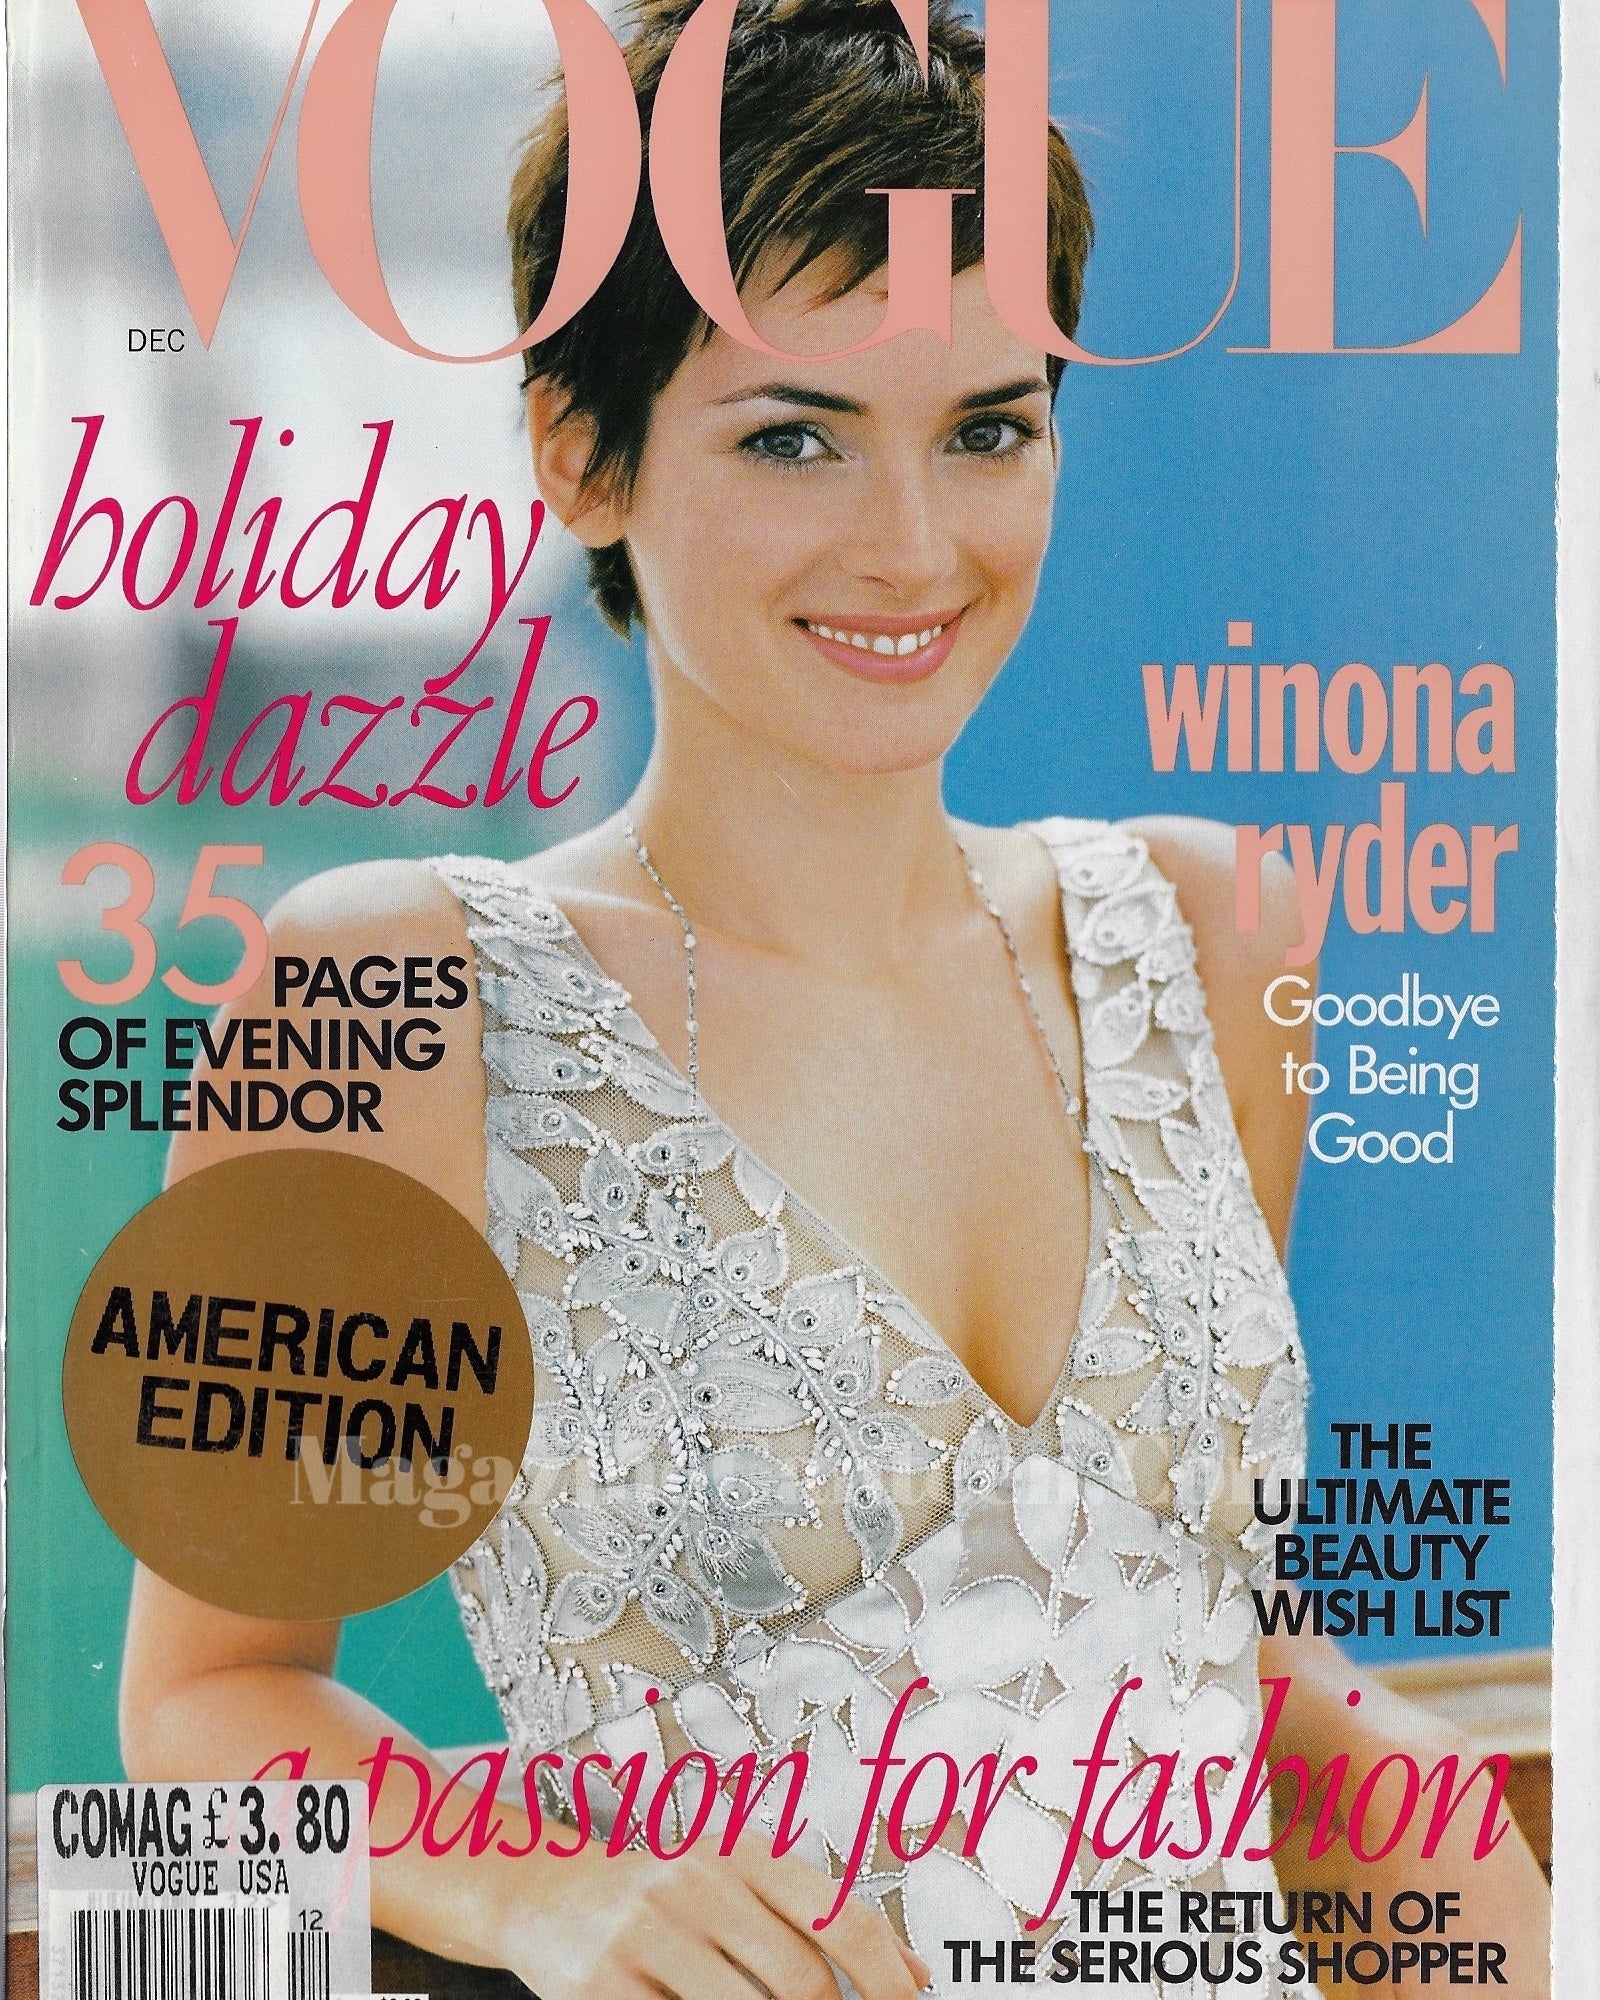 Vogue USA Magazine December 1996 - Winona Ryder